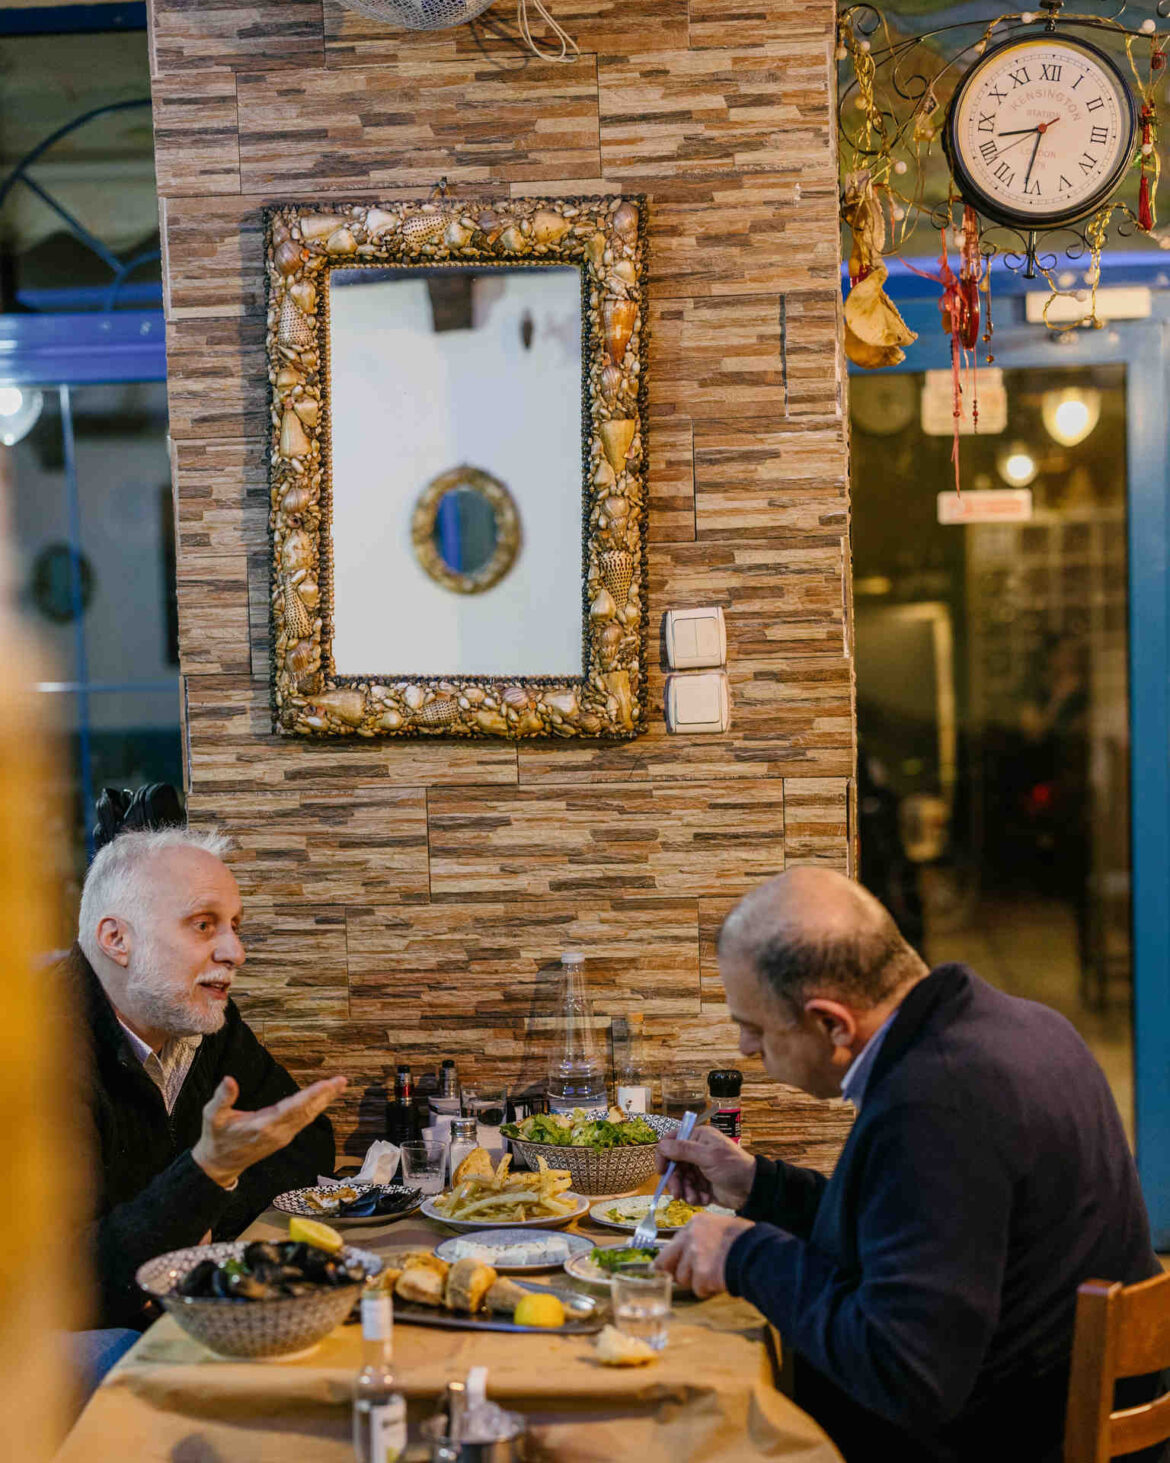 7 γευστικά στέκια στη Θεσσαλονίκη, που θες gps για να τα βρεις